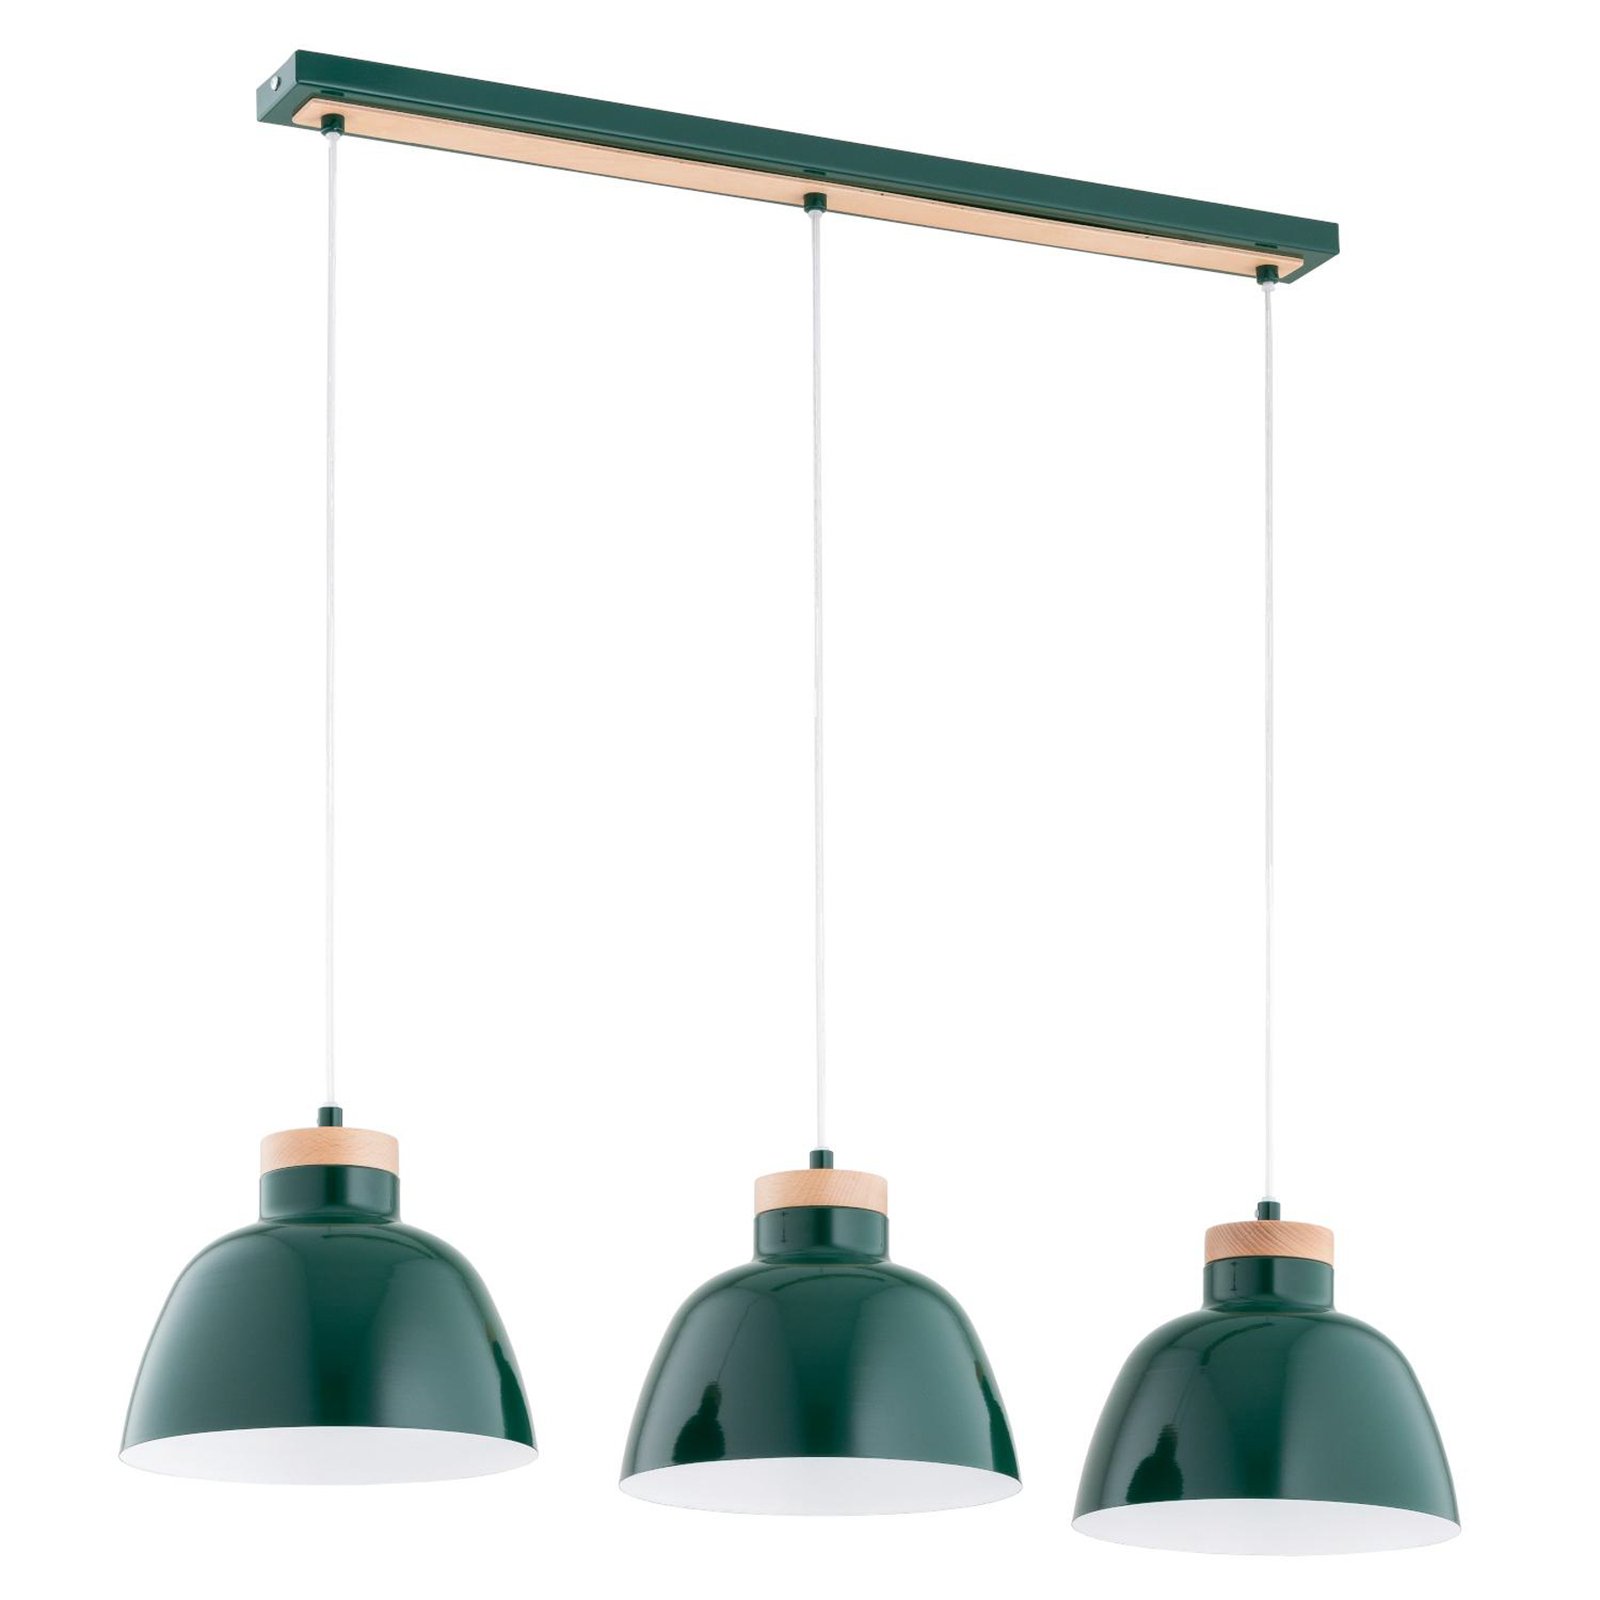 Hanglamp Lorien, donkergroen, 3-lamps, metaal, hout